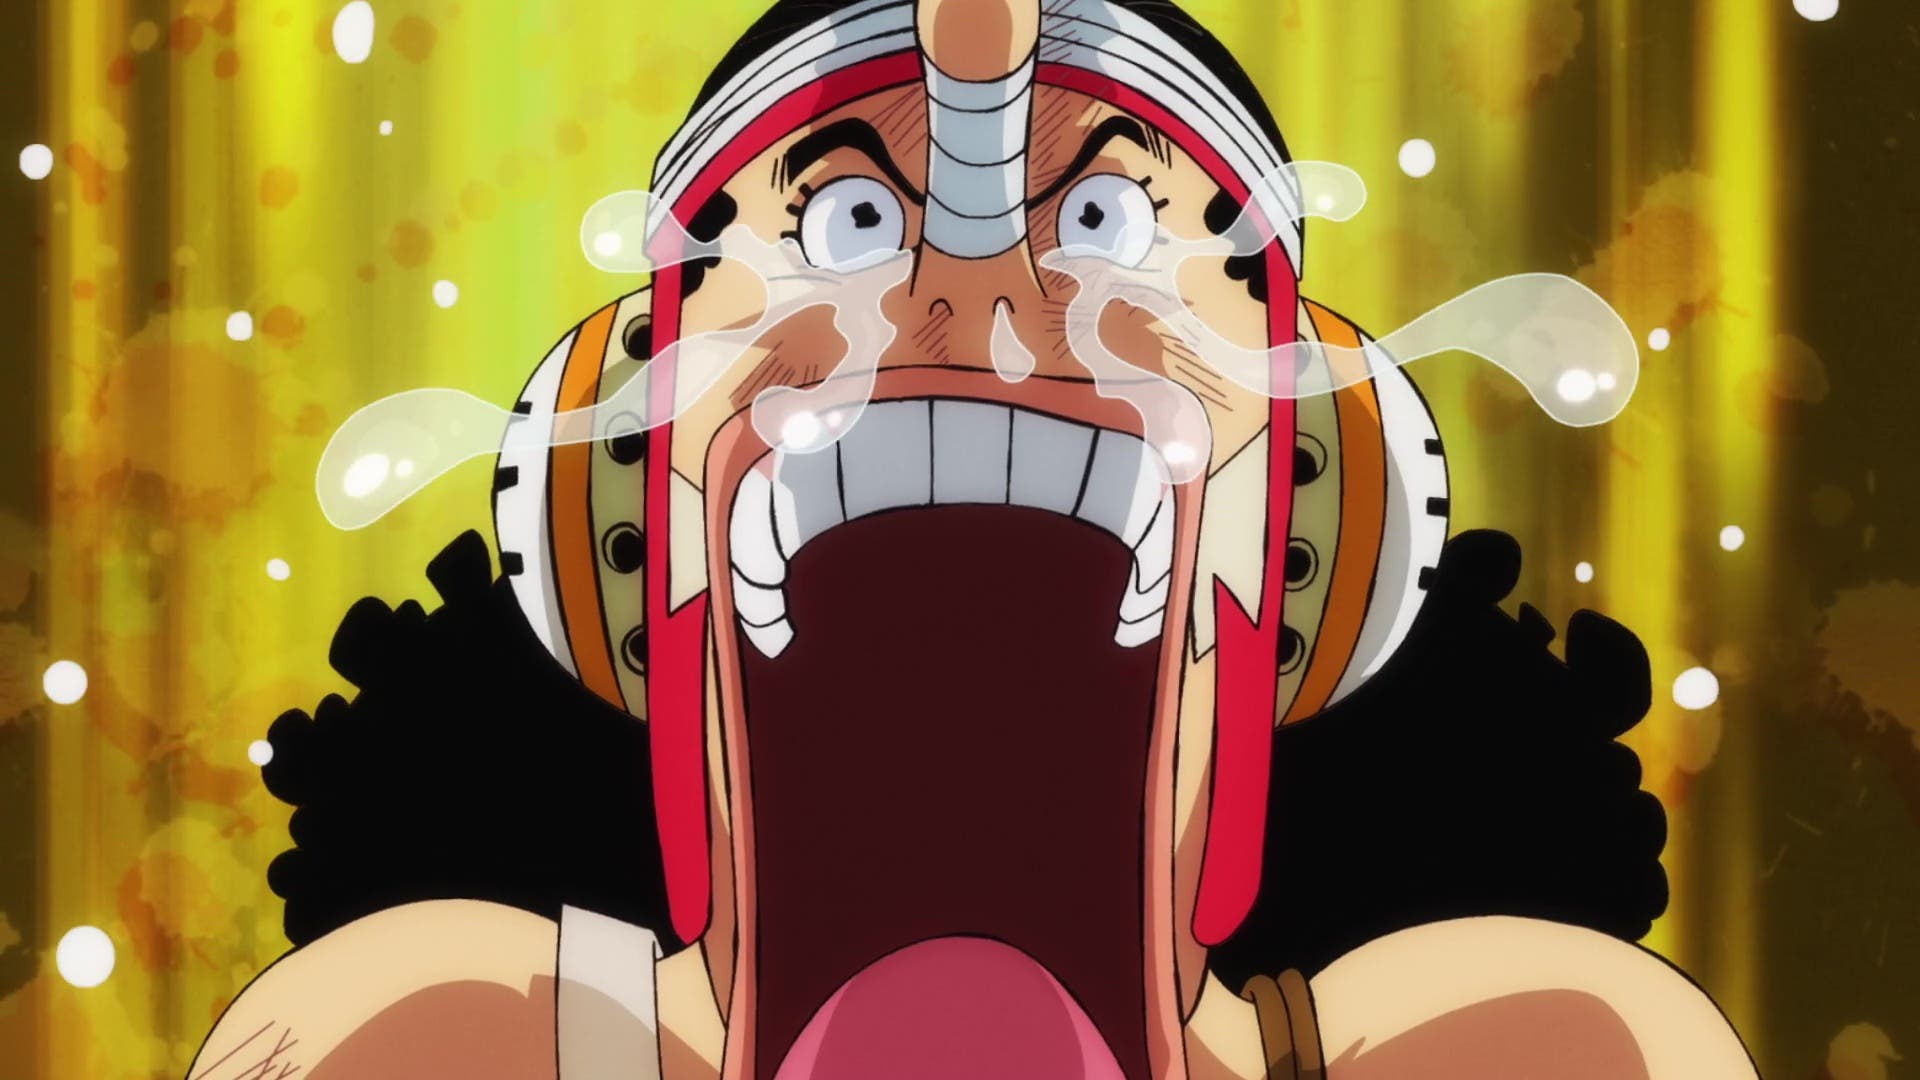 One Piece Latinoamérica - Próximos episodios del anime 1065: ¡La Alianza es  aniquilada! 1066: ¡La Alianza contraataca! 1067: El Intérprete Clave  Créditos a Morgans